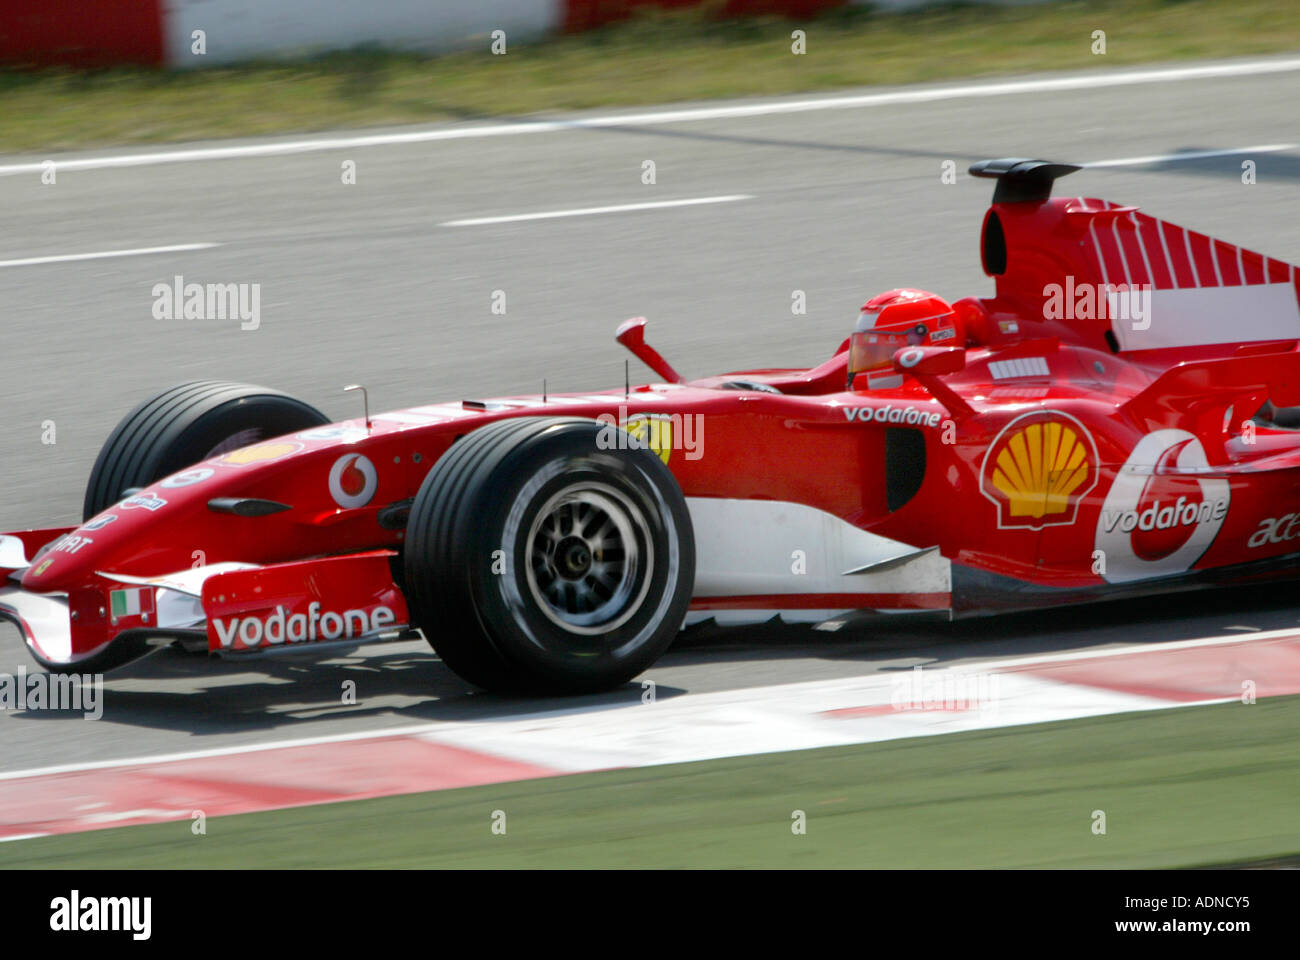 Michael Schumacher, siete veces campeón mundial de Fórmula uno, compitiendo en la temporada 2006 en Montmelo, Barcelona Foto de stock